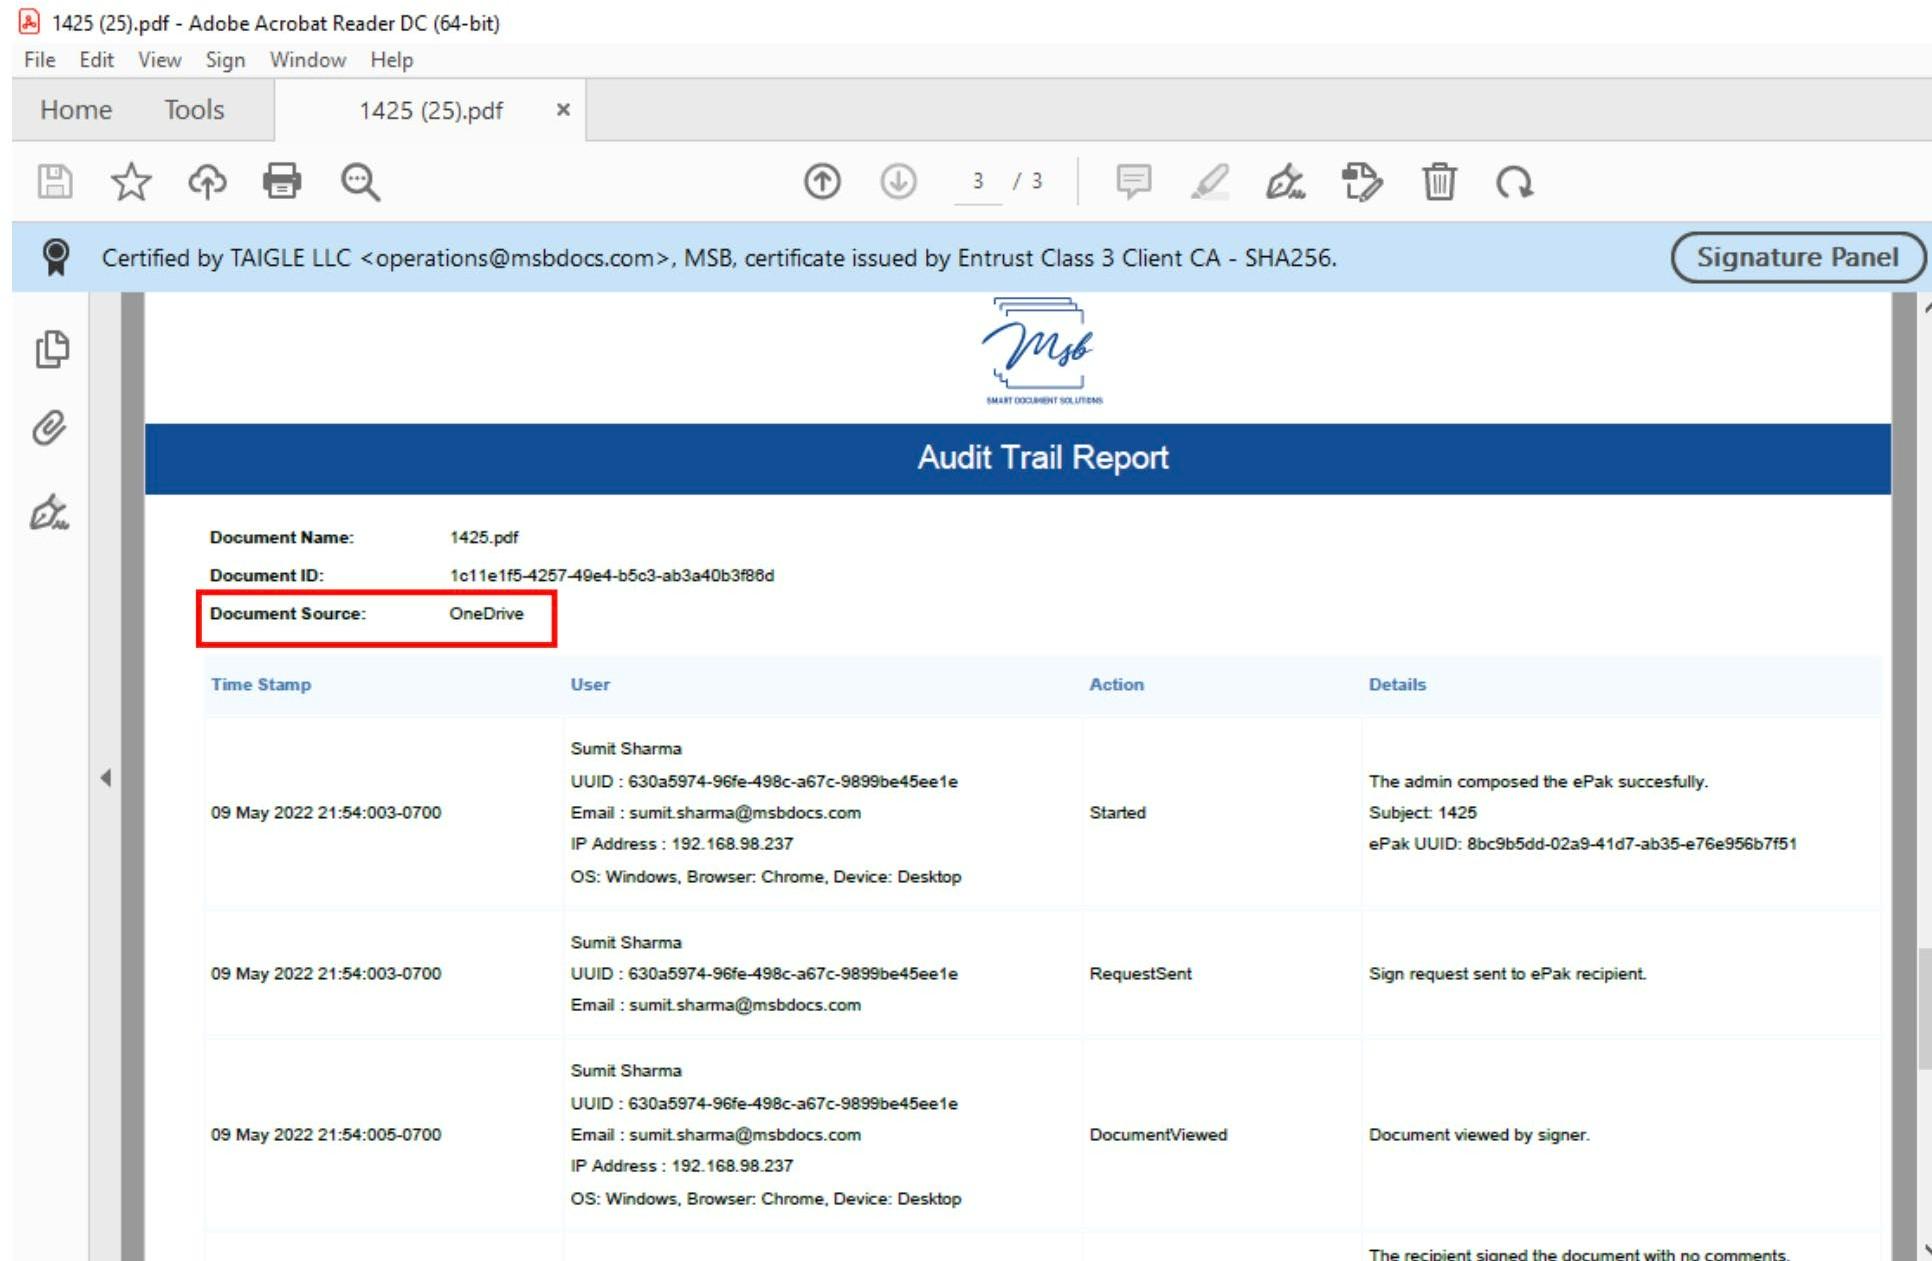 report ePak activities and the report User activities